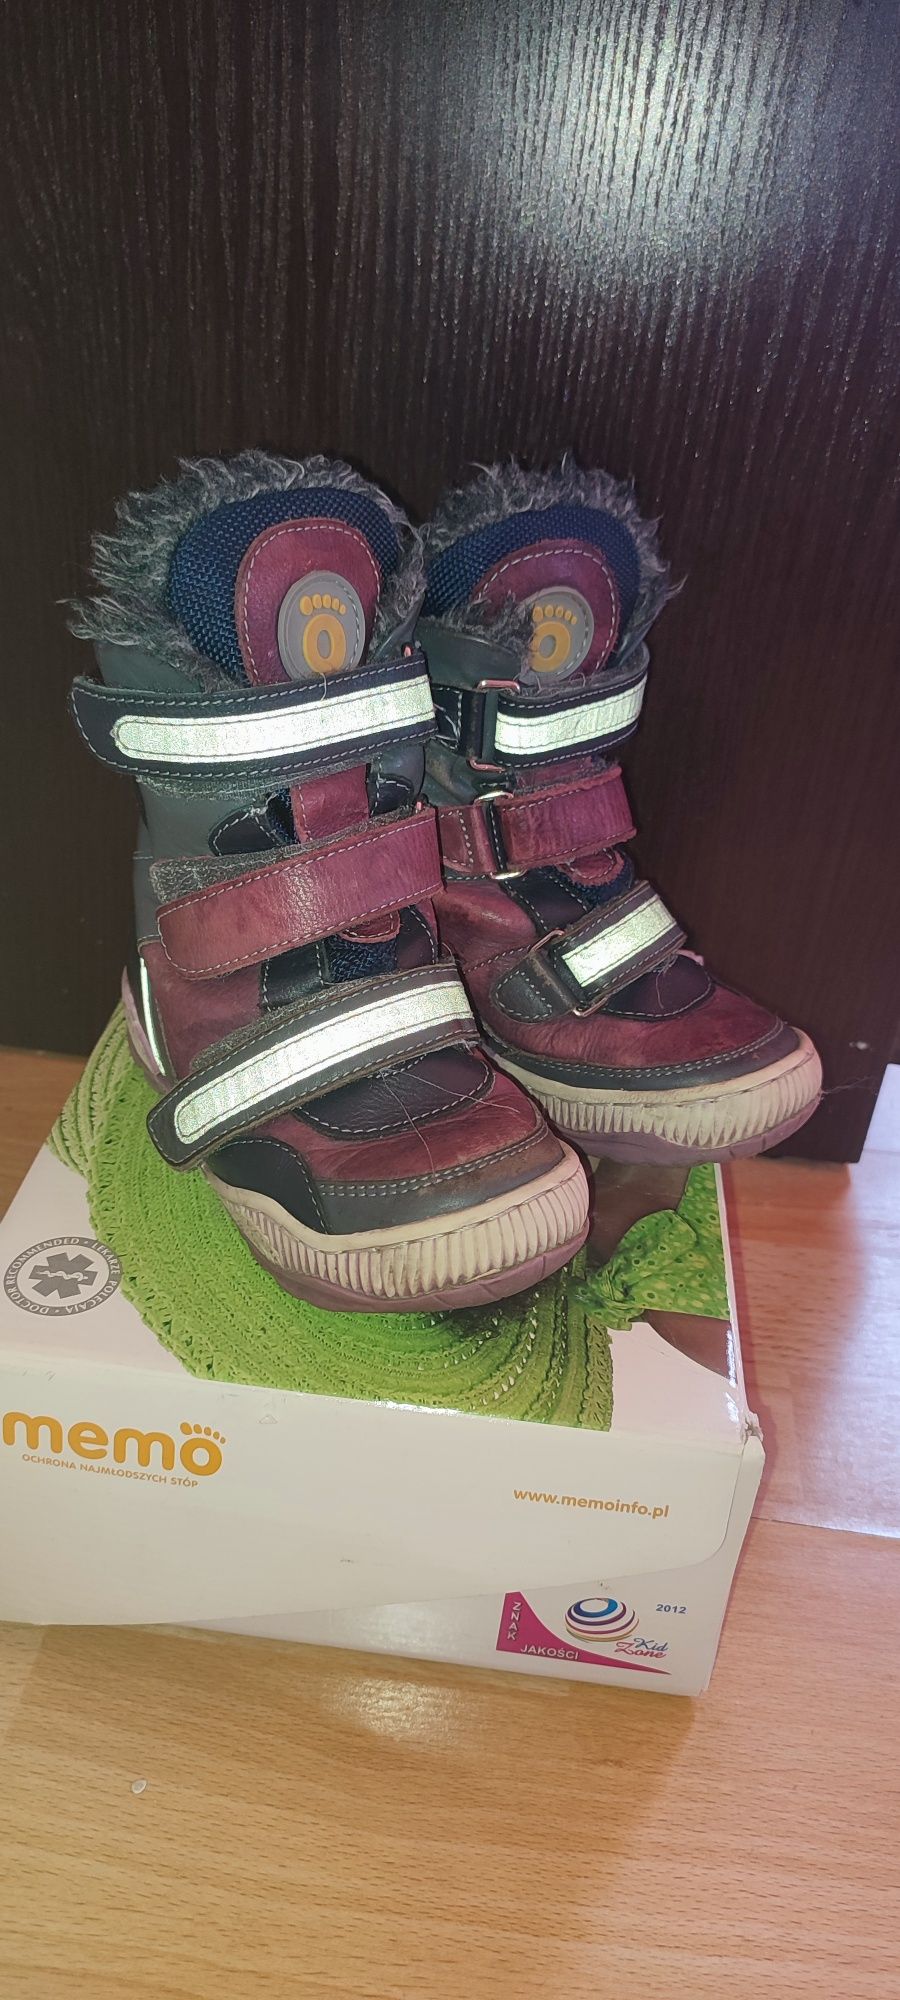 Ciepłe buty zimowe korekcyjne dziecięce r 26 Memo